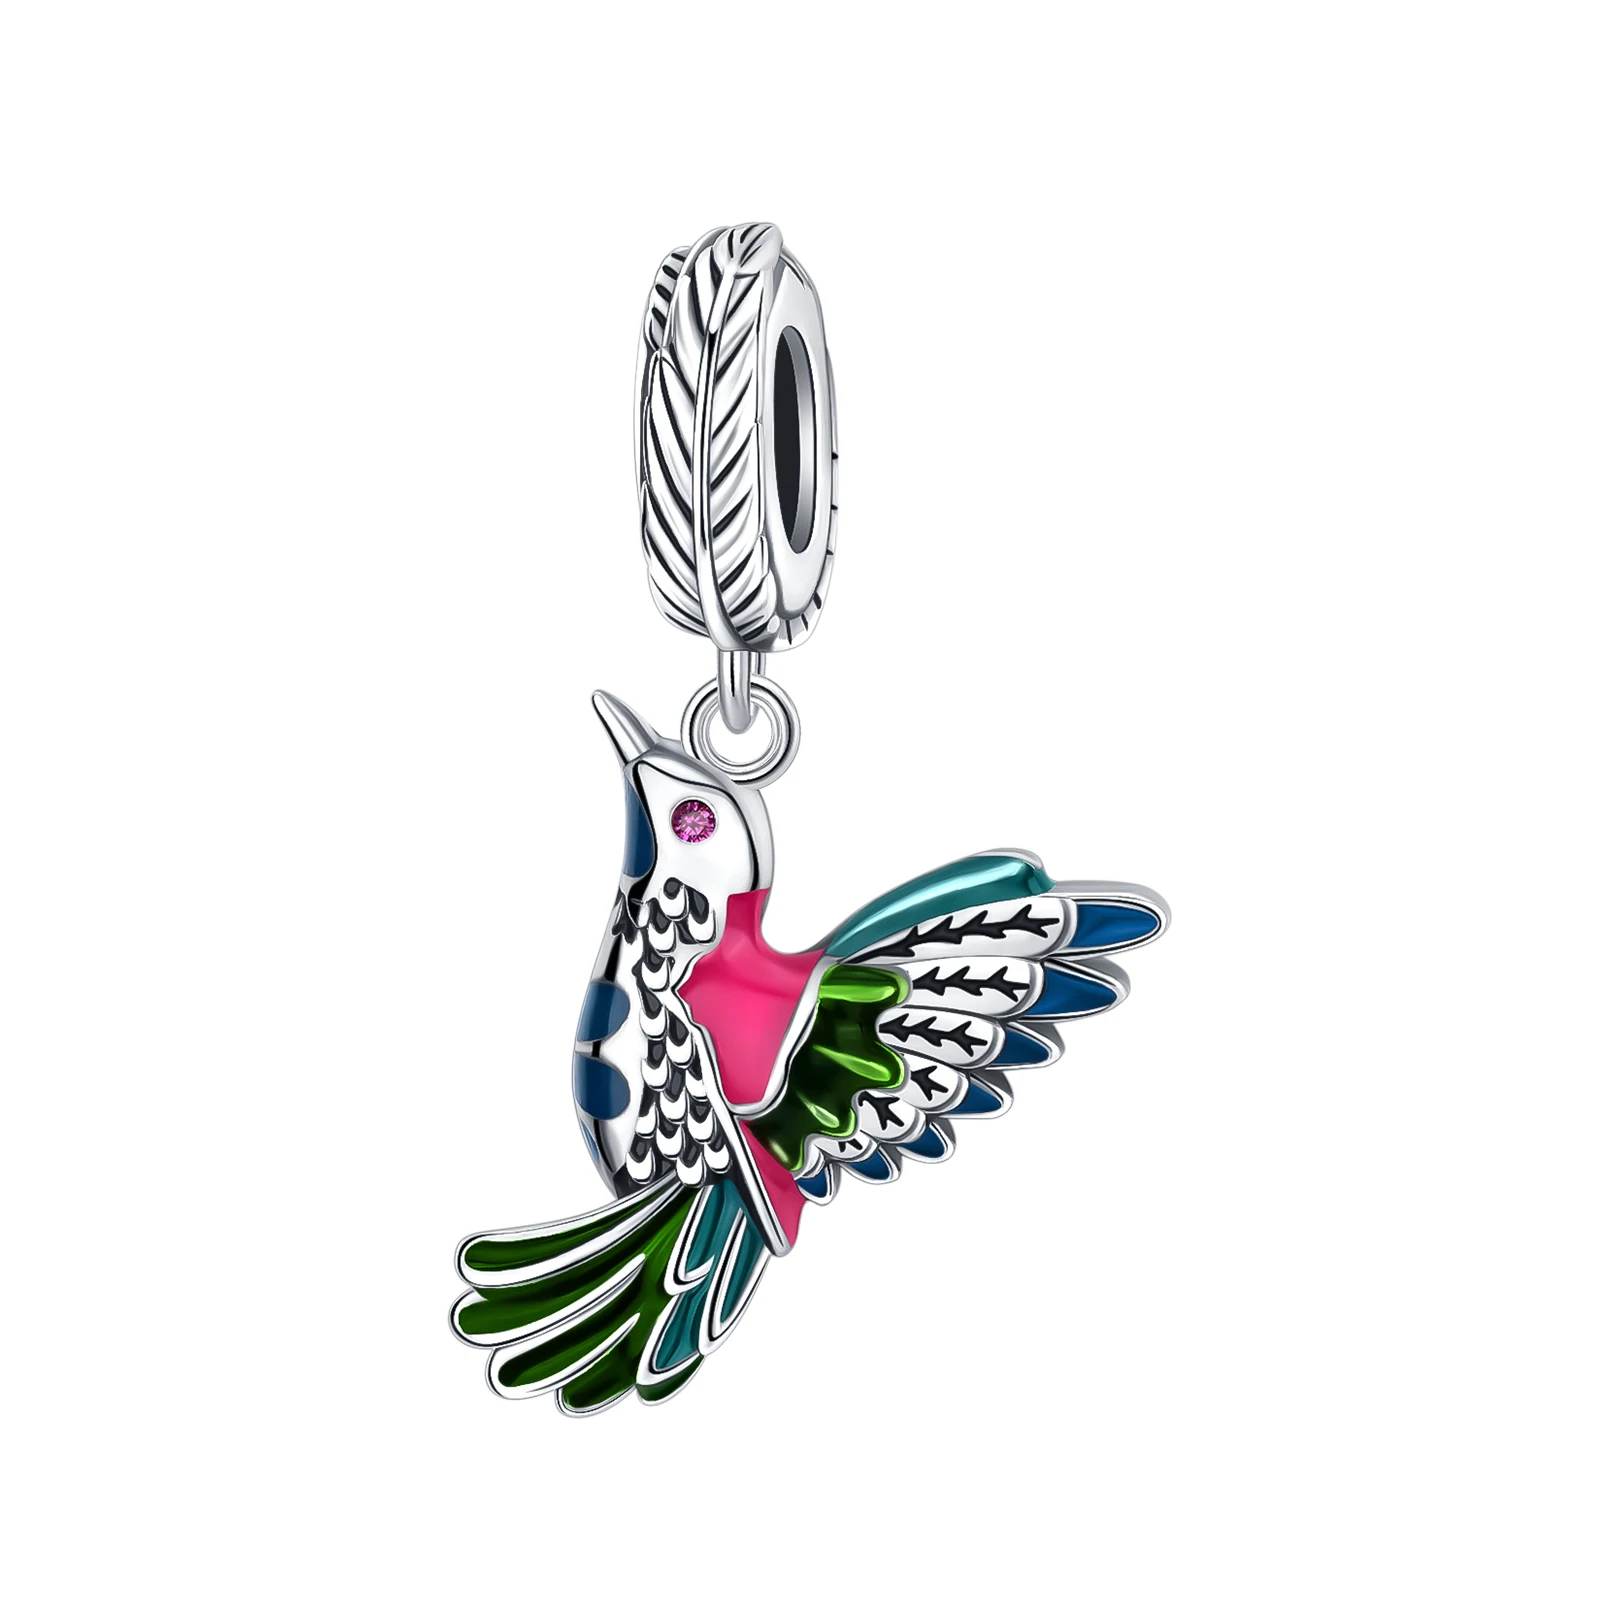 

Женский браслет «Птица» из серебра 925 пробы, с зелеными перьями